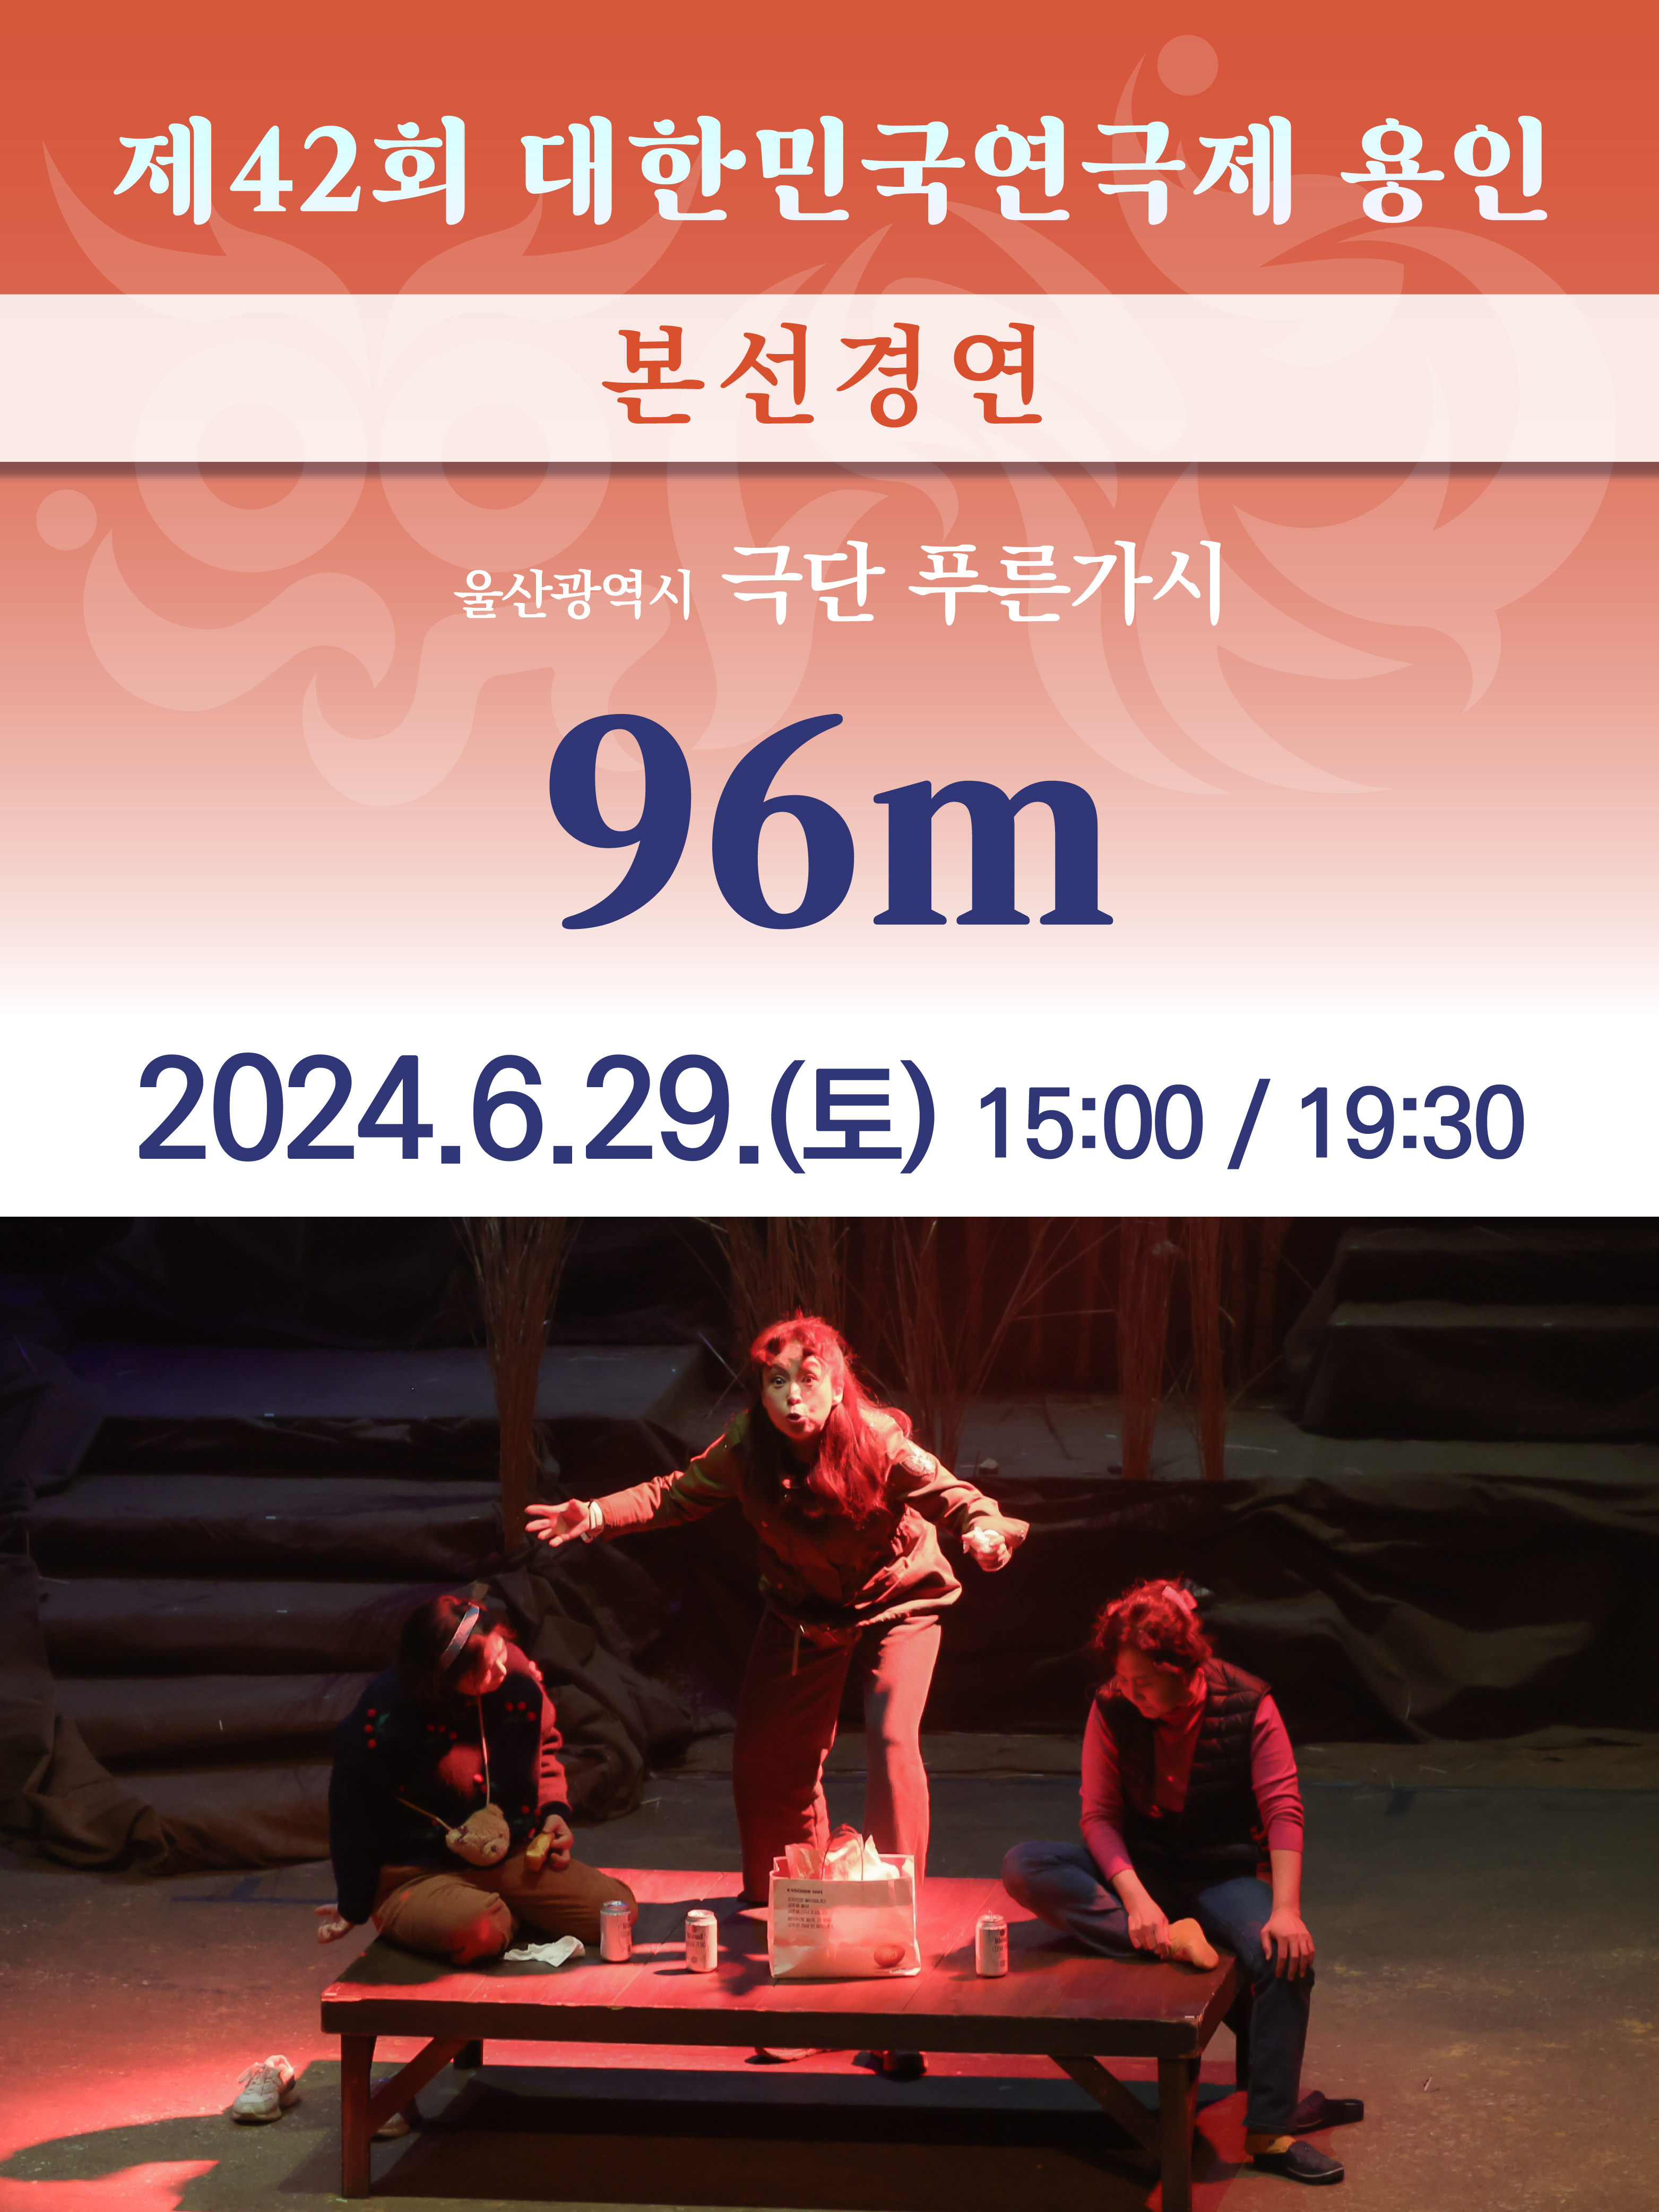 제42회 대한민국연극제 용인 〈96m〉 (울산) 홍보포스터